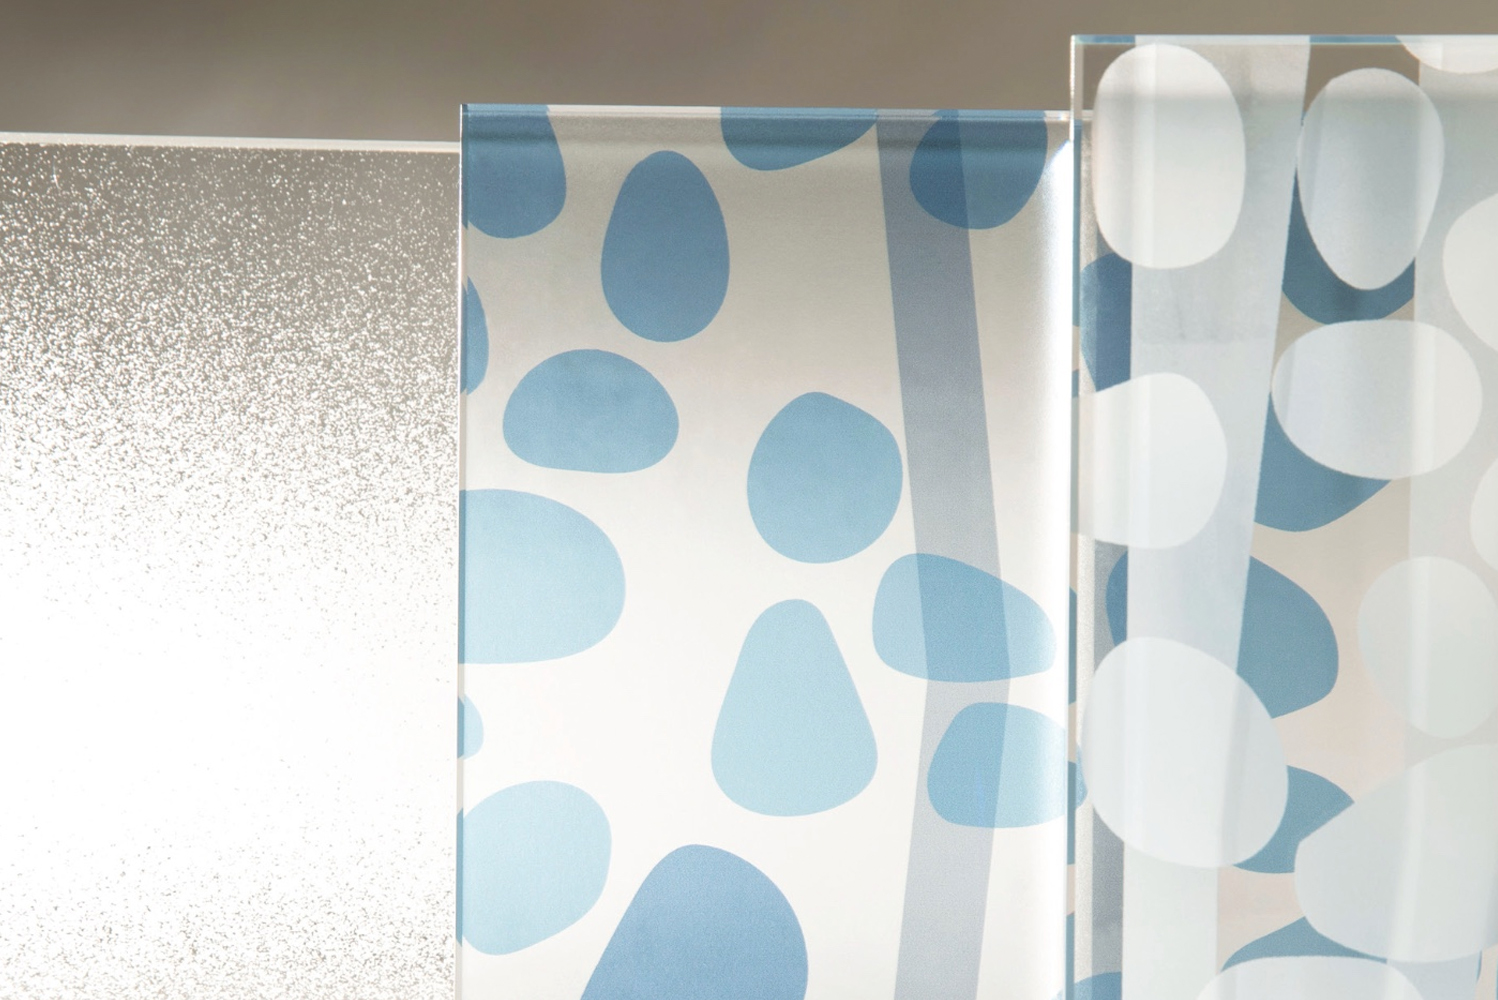 Skyline Designwith designer Rosalyn Camalaunched the Camaflage glass